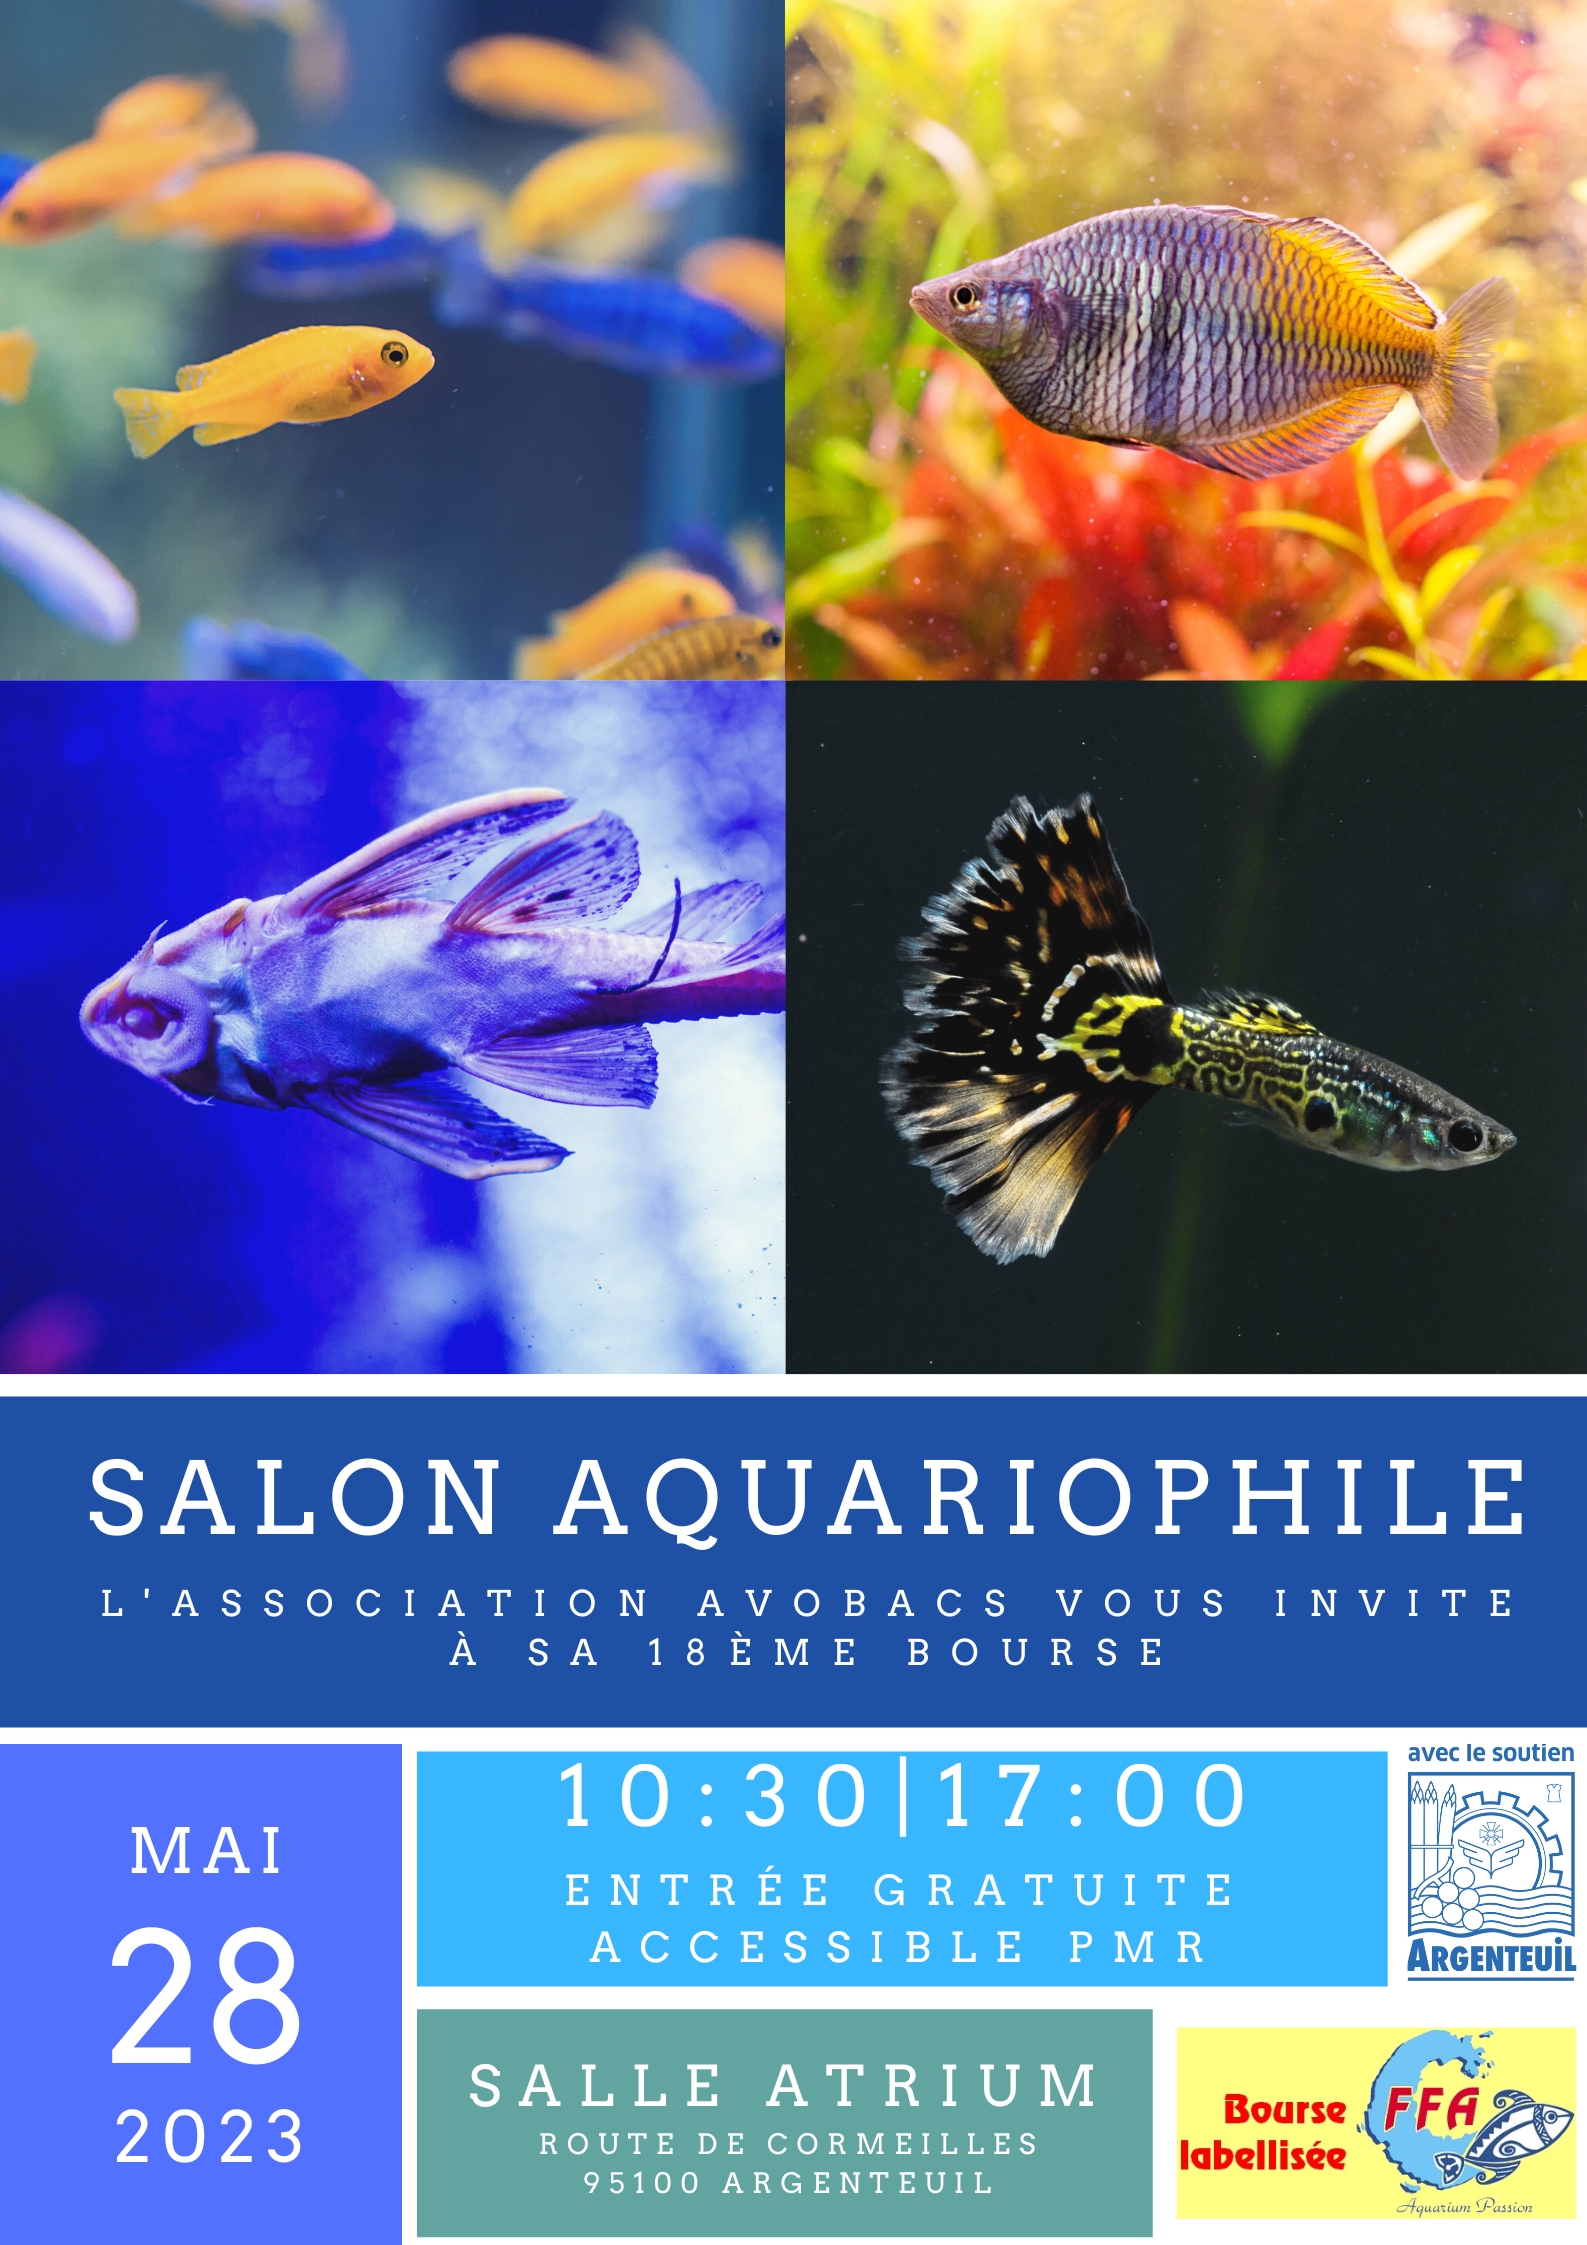 Salon Aquariophile Avobacs, Bourse Argenteuil (95) 20230528-Salon-Affiche